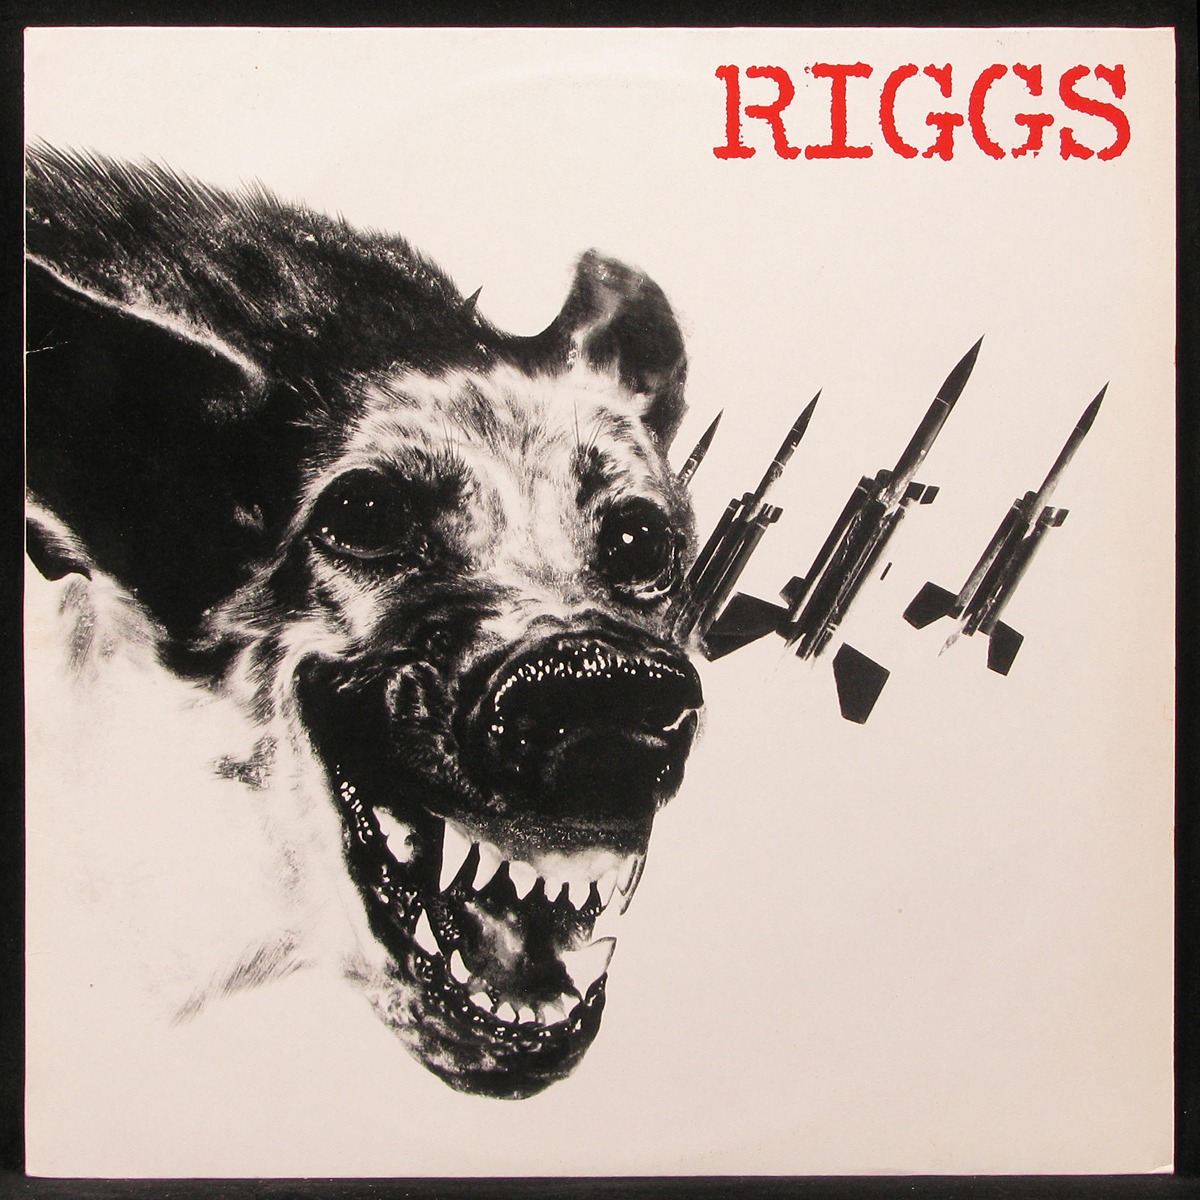 LP Riggs — Riggs фото